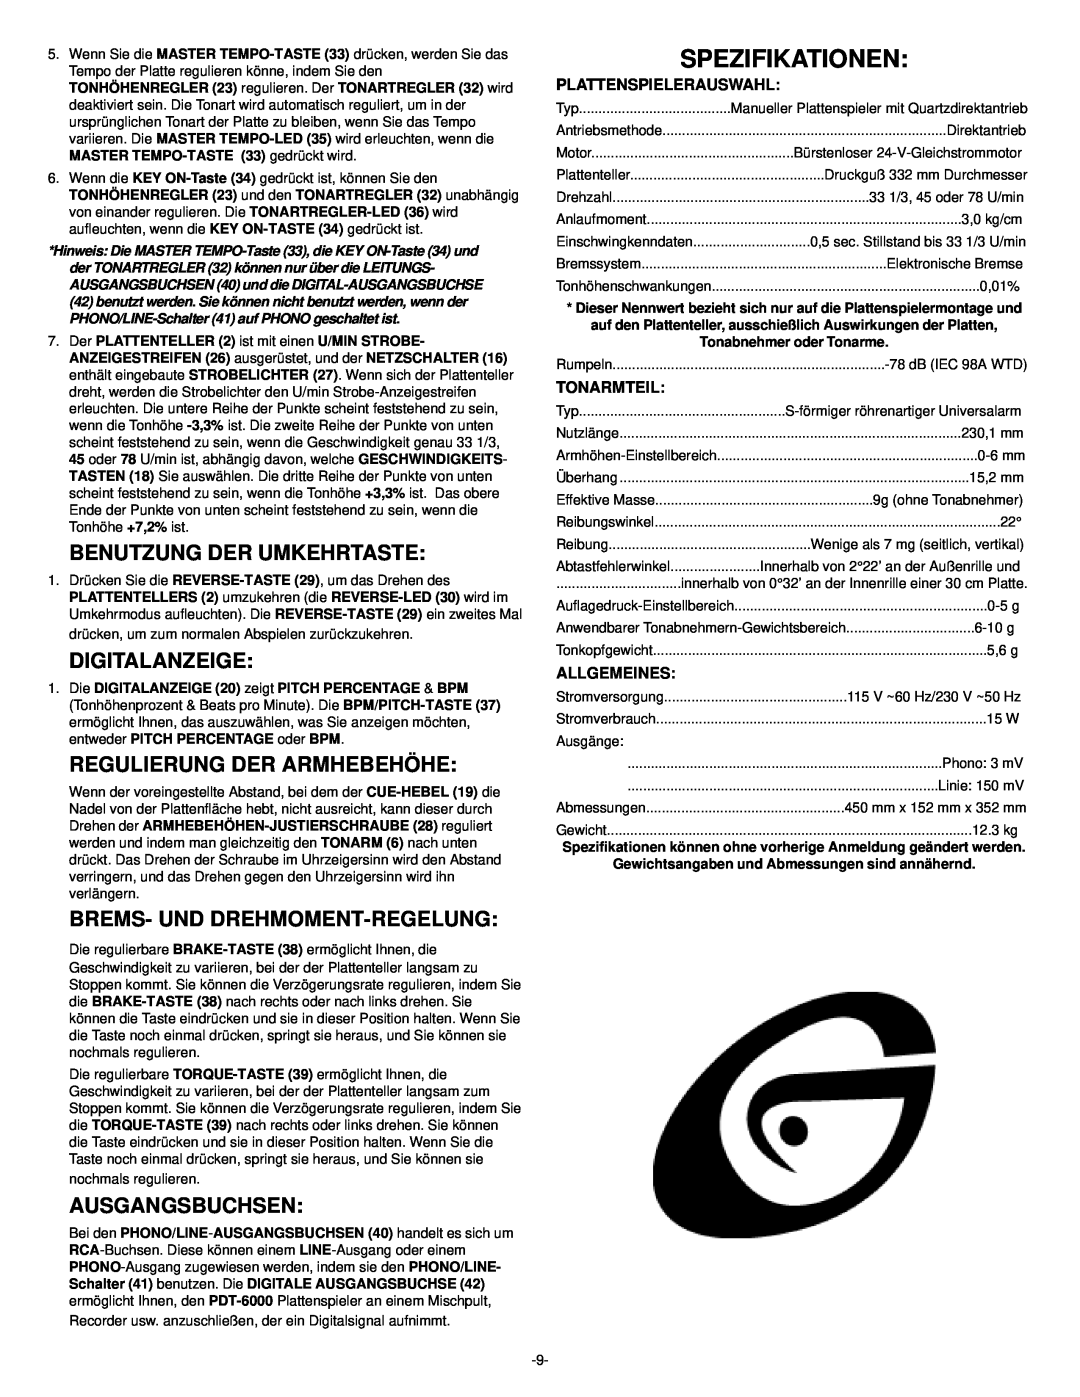 Gemini PDT-6000 Spezifikationen, Benutzung Der Umkehrtaste, Digitalanzeige, Regulierung Der Armhebehöhe, Ausgangsbuchsen 